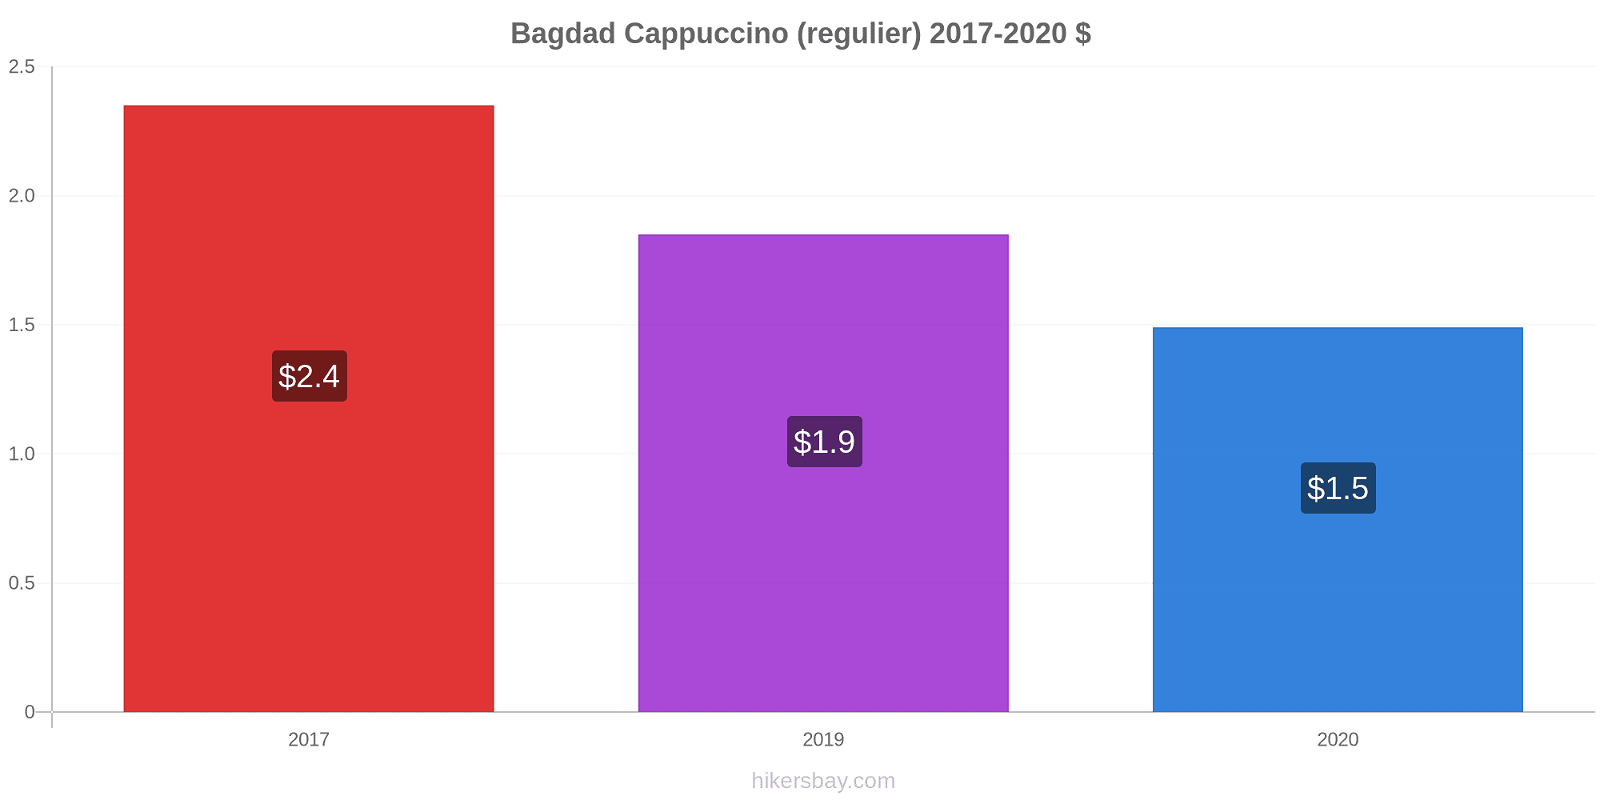 Bagdad prijswijzigingen Cappuccino (regelmatige) hikersbay.com